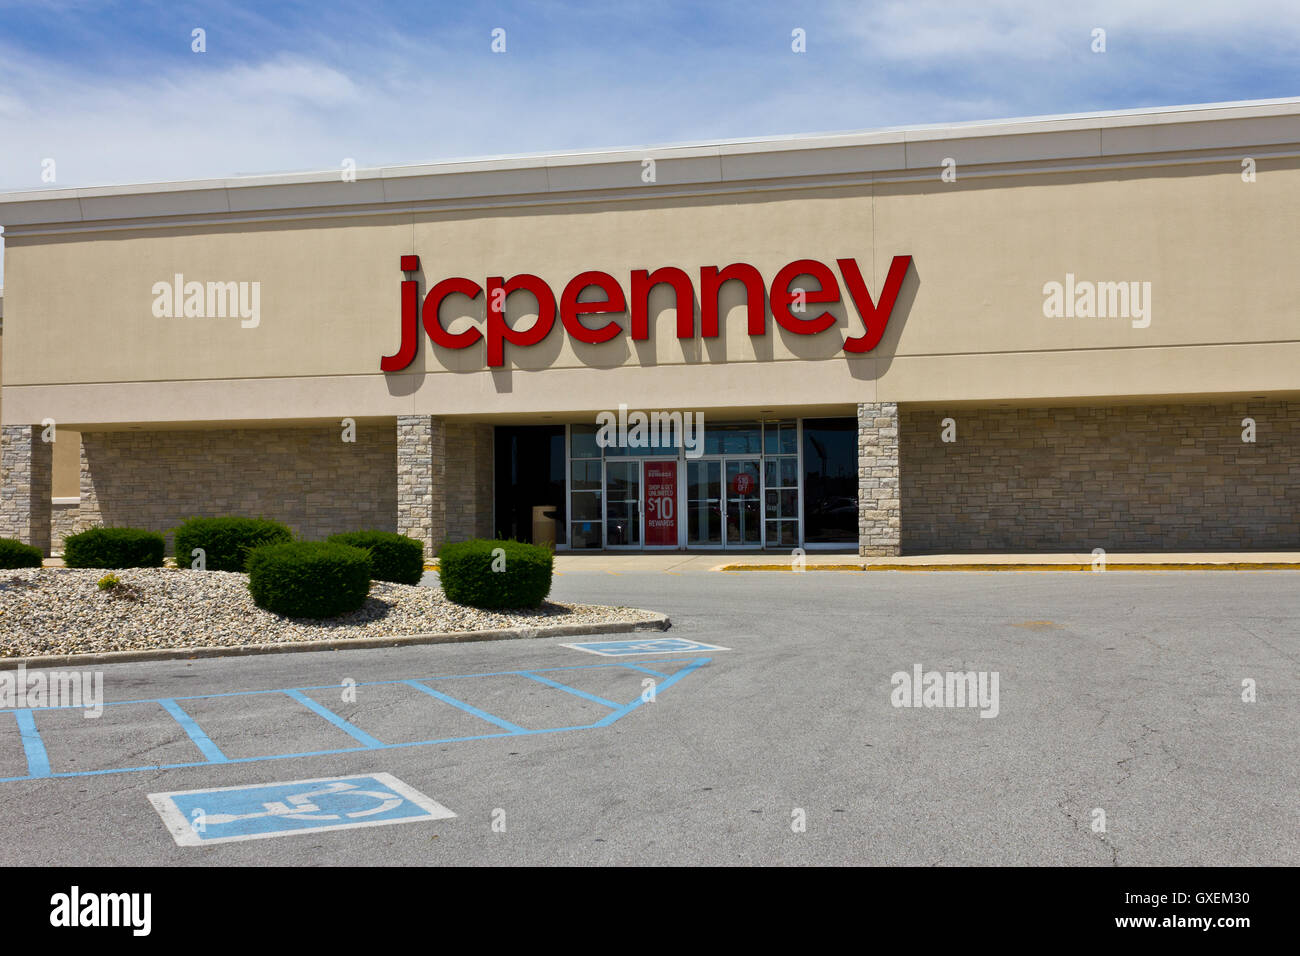 Indianapolis - Circa Juin 2016 : JC Penney Emplacement Centre Commercial de vente au détail. Pce est un détaillant de vêtements et d'ameublement de maison VI Banque D'Images